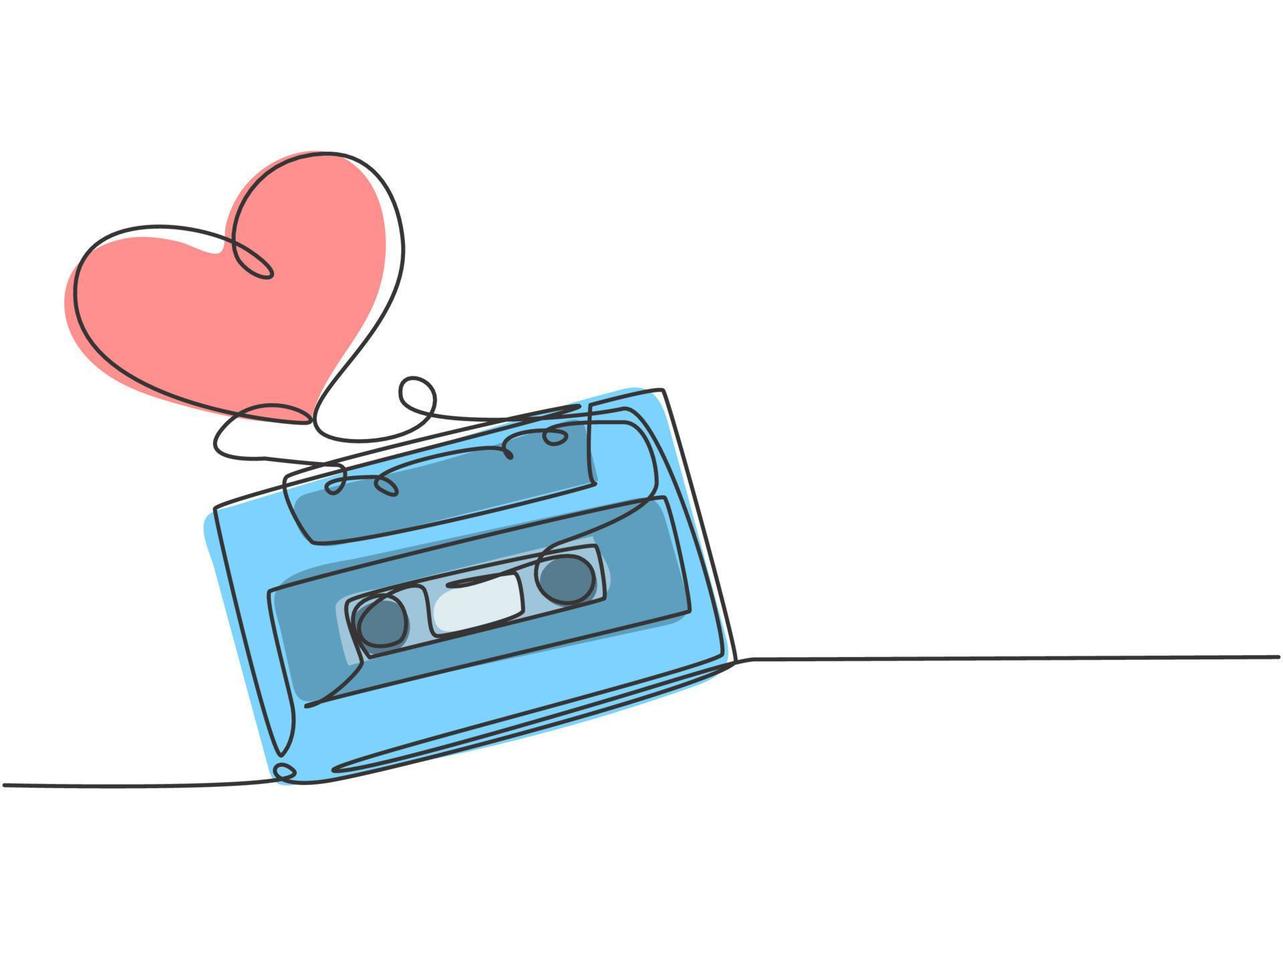 een doorlopende lijntekening van creatief retro en vintage cassettebandlint gevormd hartvormig. romantische muzikale bruiloft uitnodiging concept enkele lijn tekenen grafisch ontwerp vectorillustratie vector